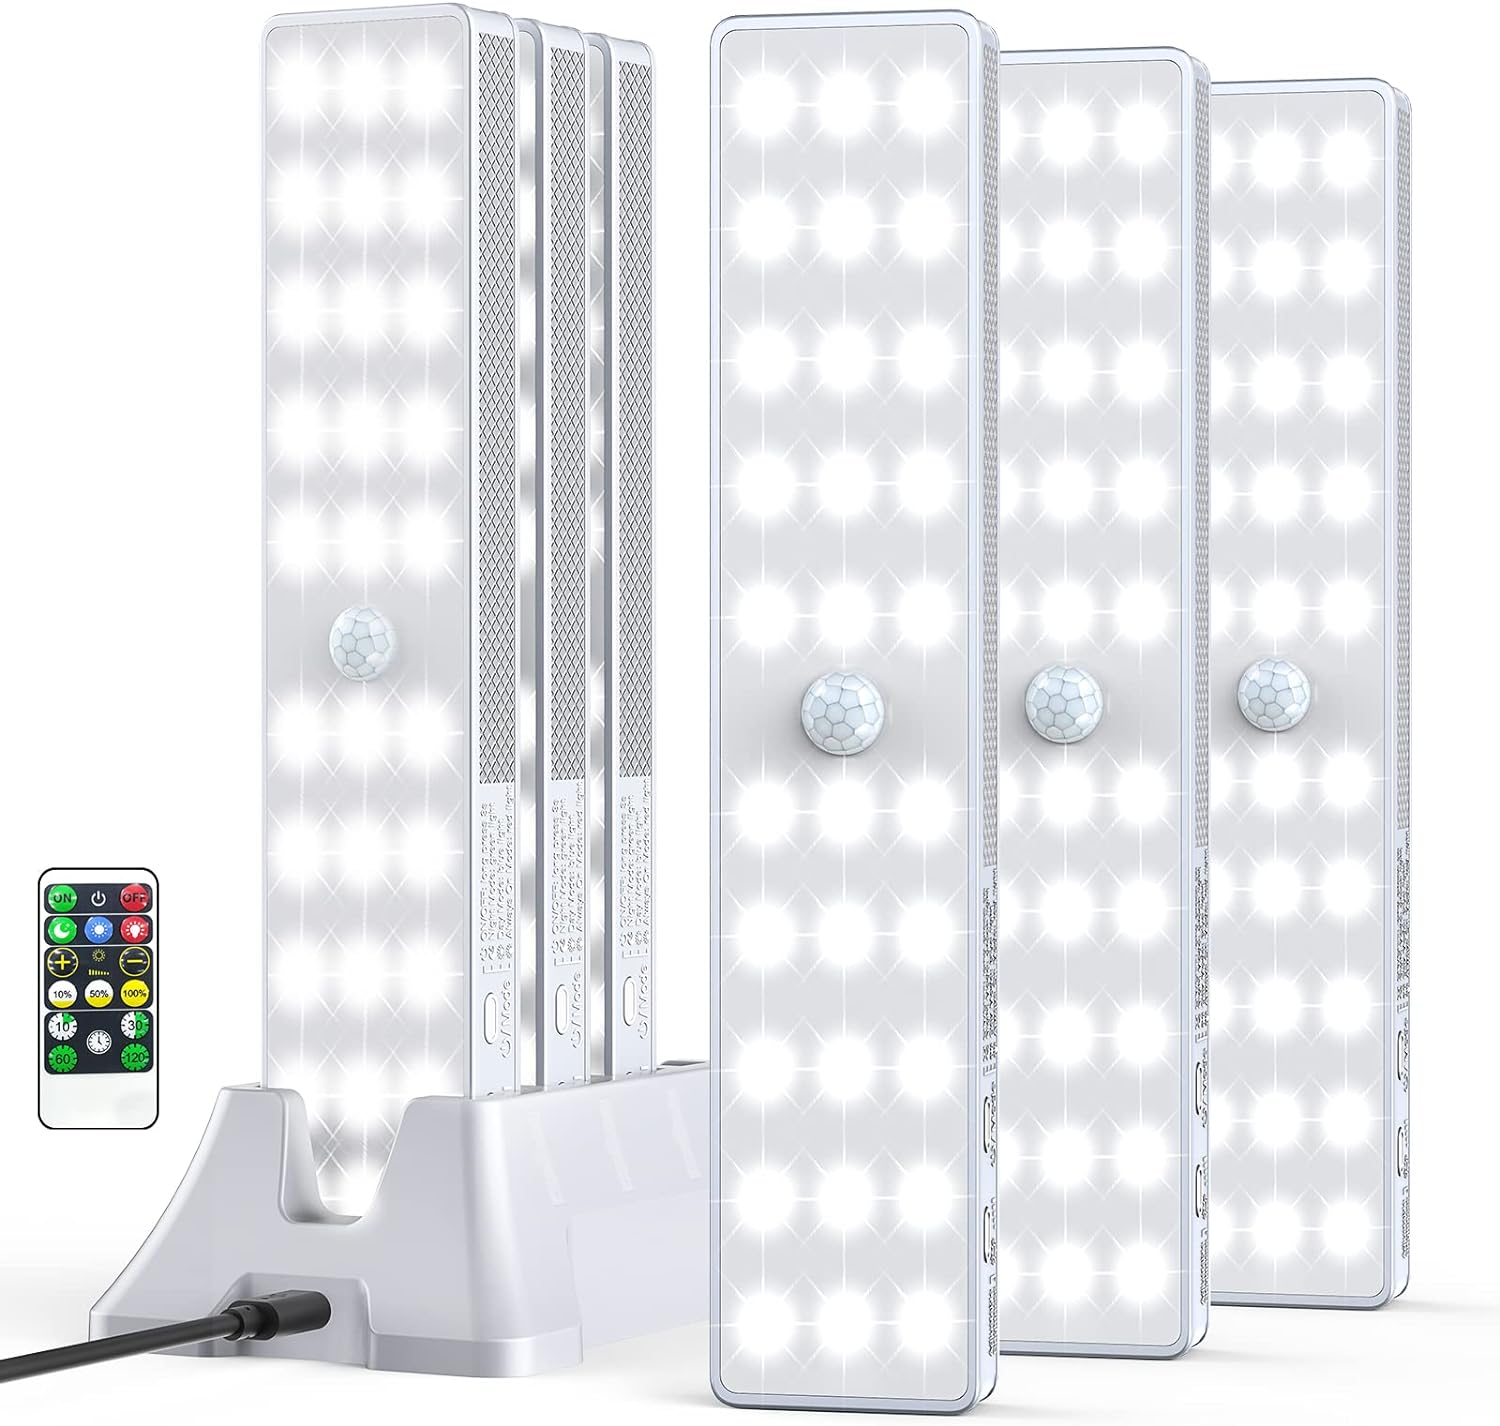 Luz LED para armario con estación de carga 30 LED regulador de intensi -  VIRTUAL MUEBLES